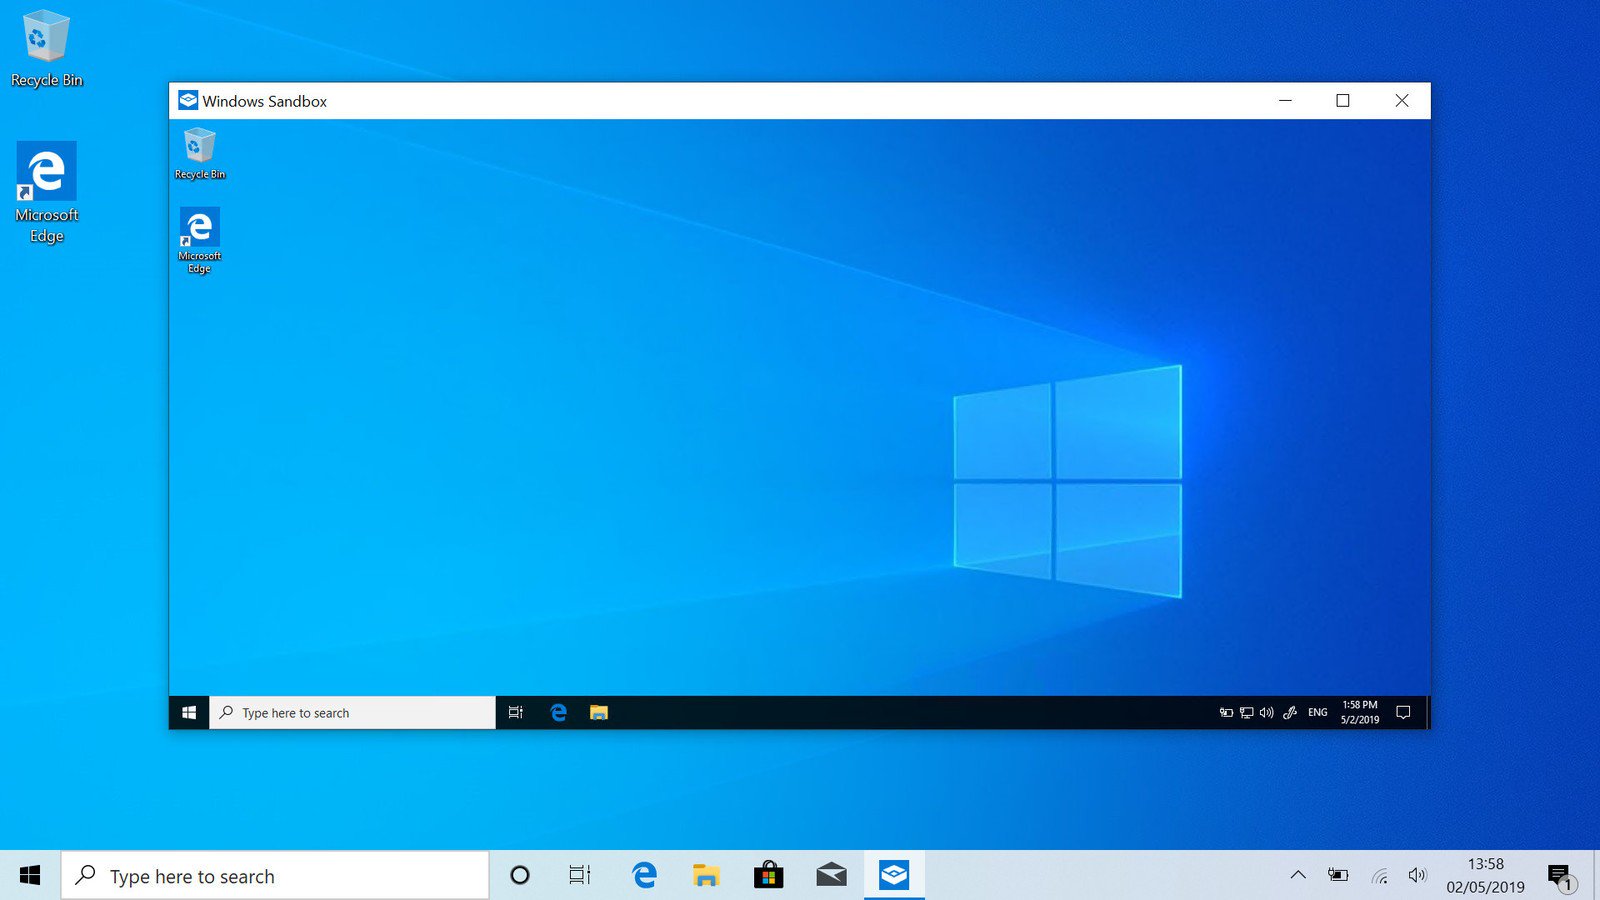 Cập nhật Windows 10 May 2019 với giao diện Light đẹp, Update Now!